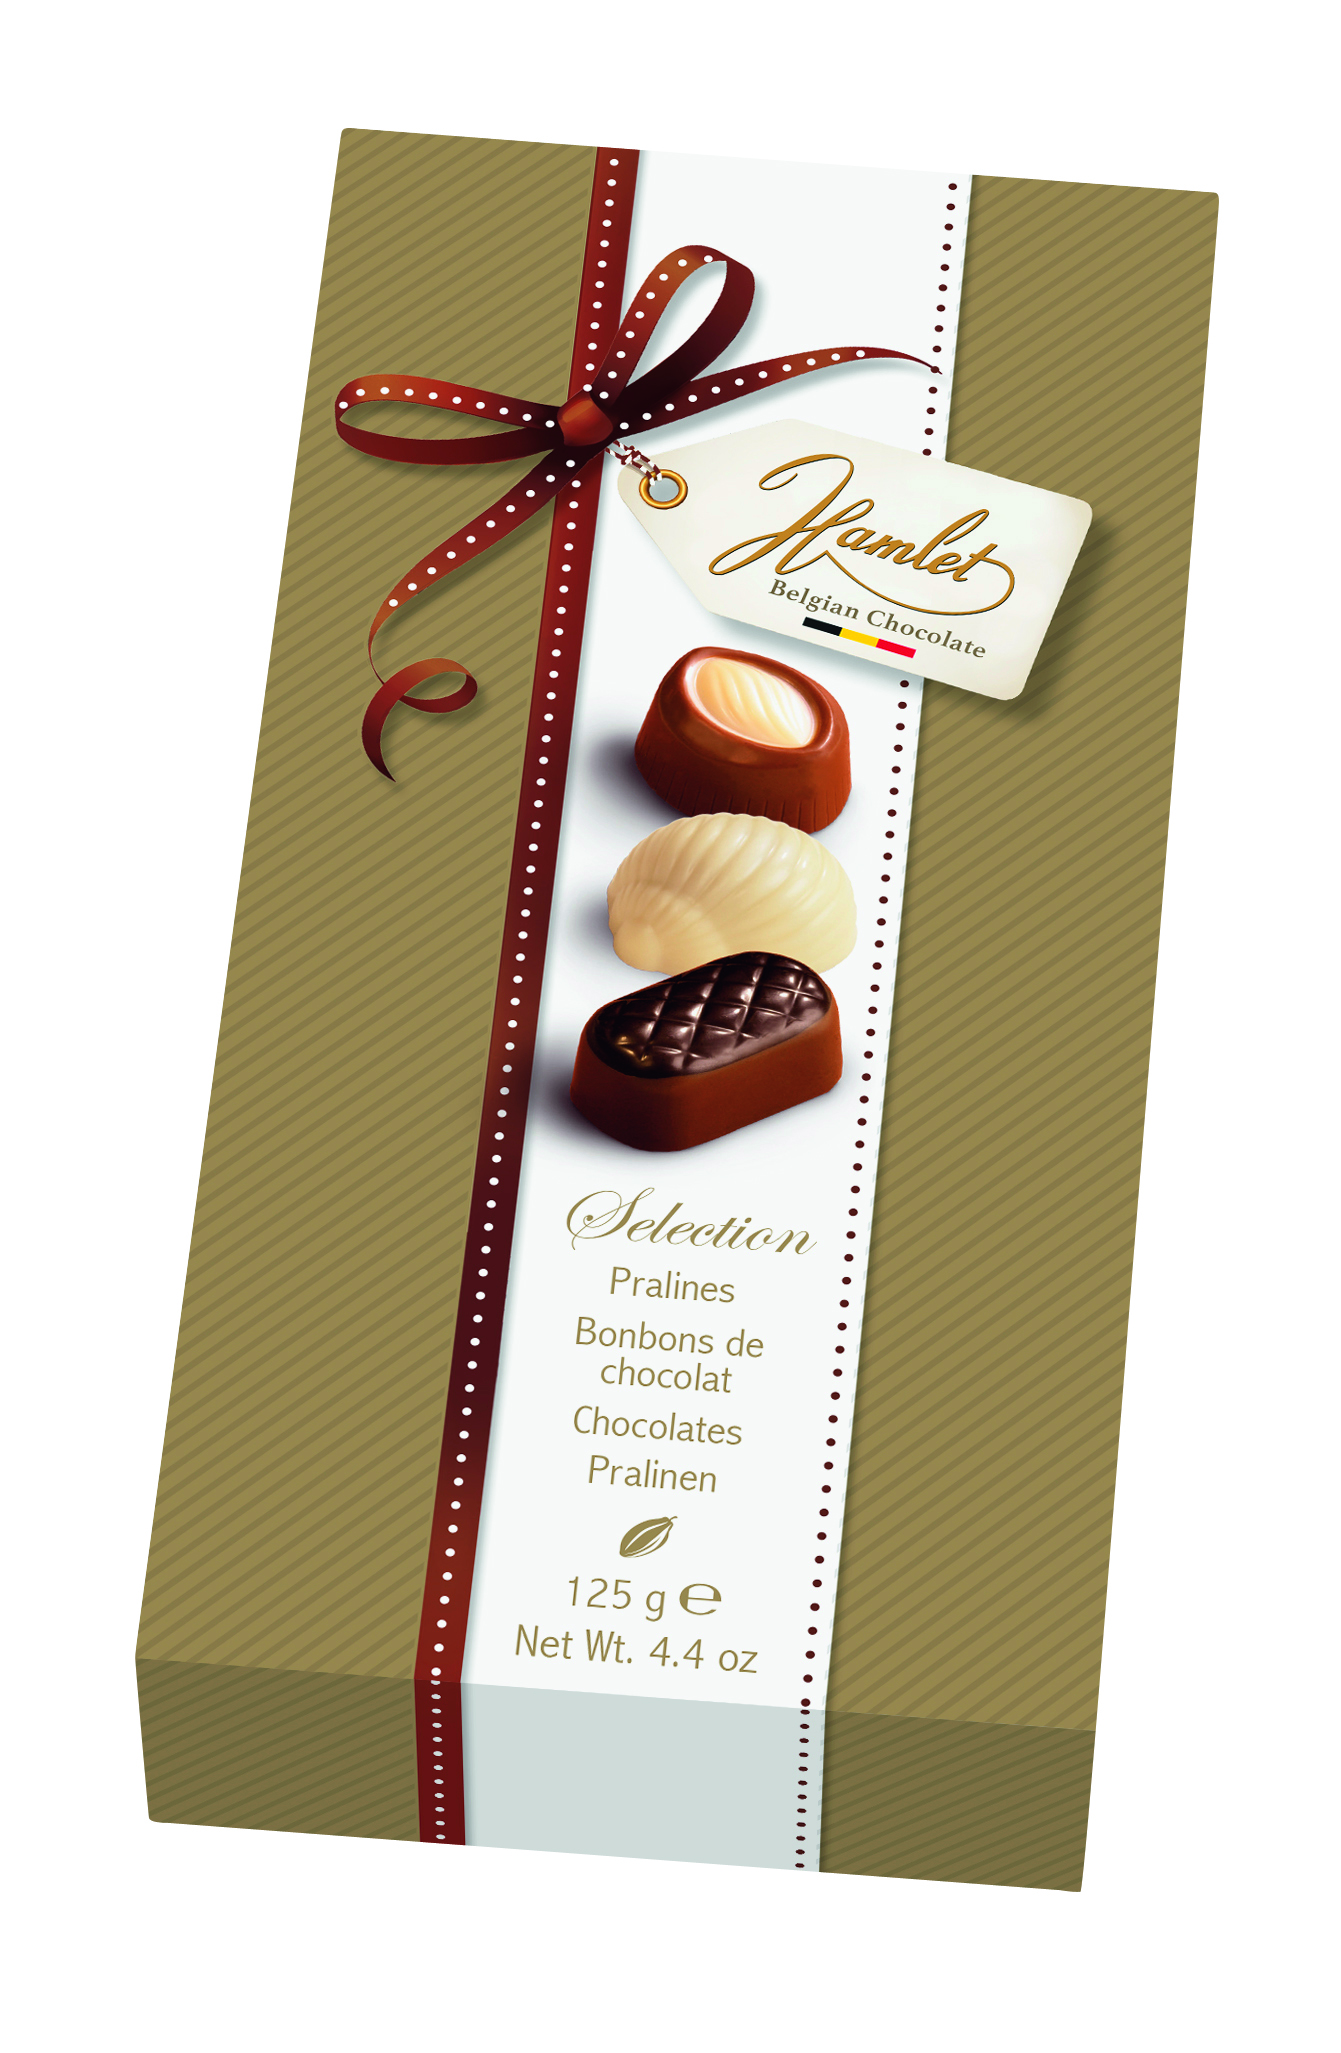 Ассорти бельгийских шоколадных конфет Hamlet Selection, 125 г